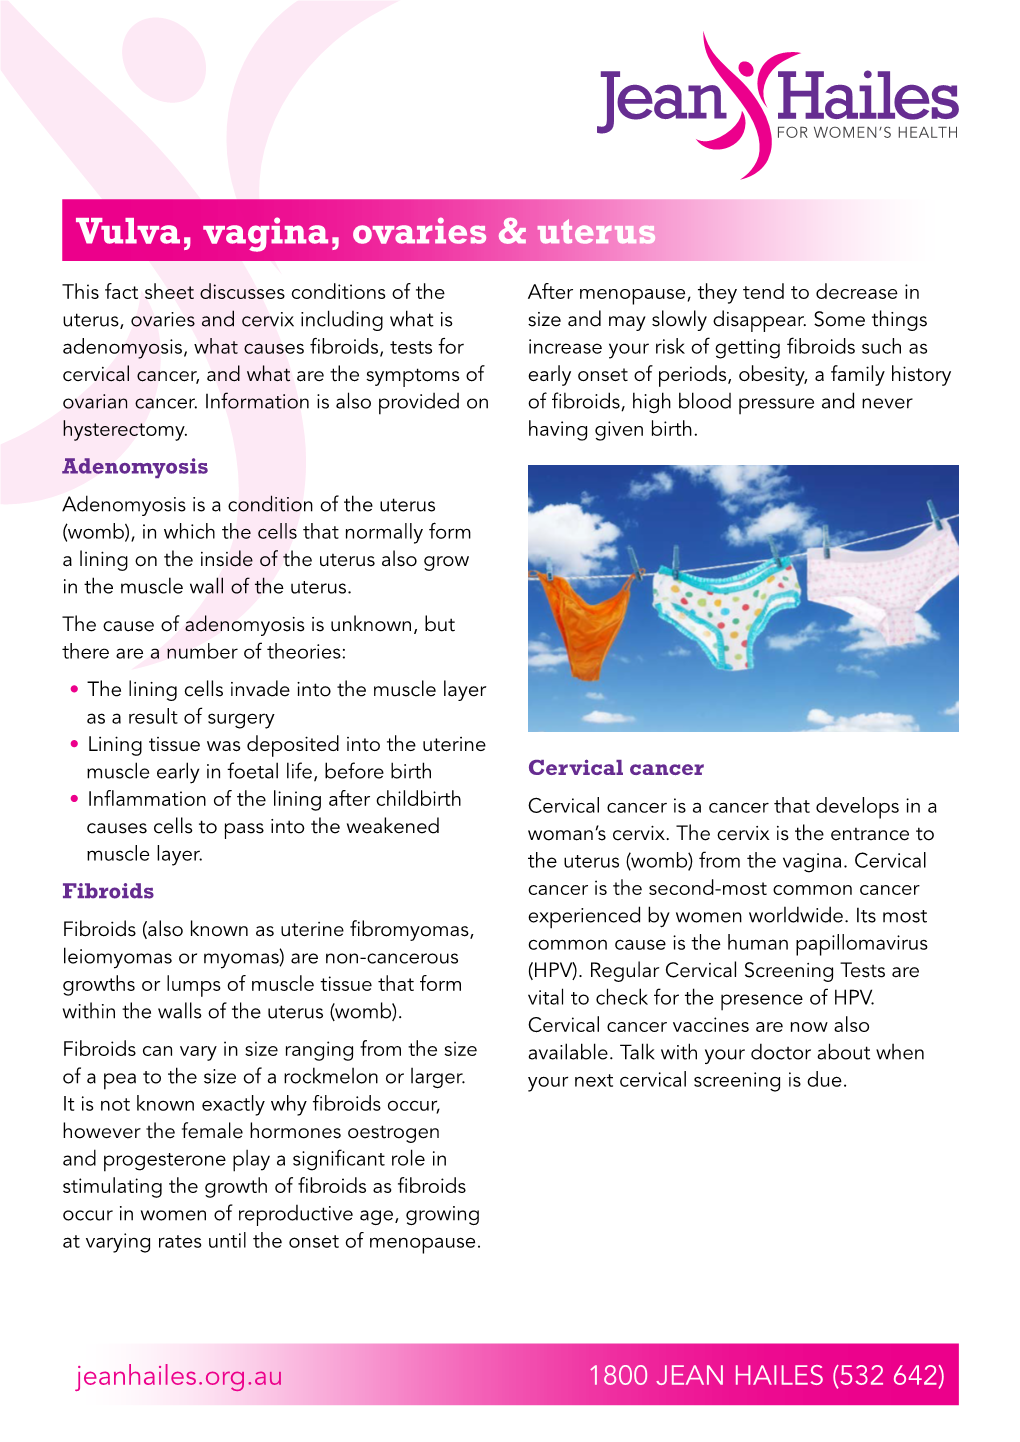 Vulva, Vagina, Ovaries & Uterus